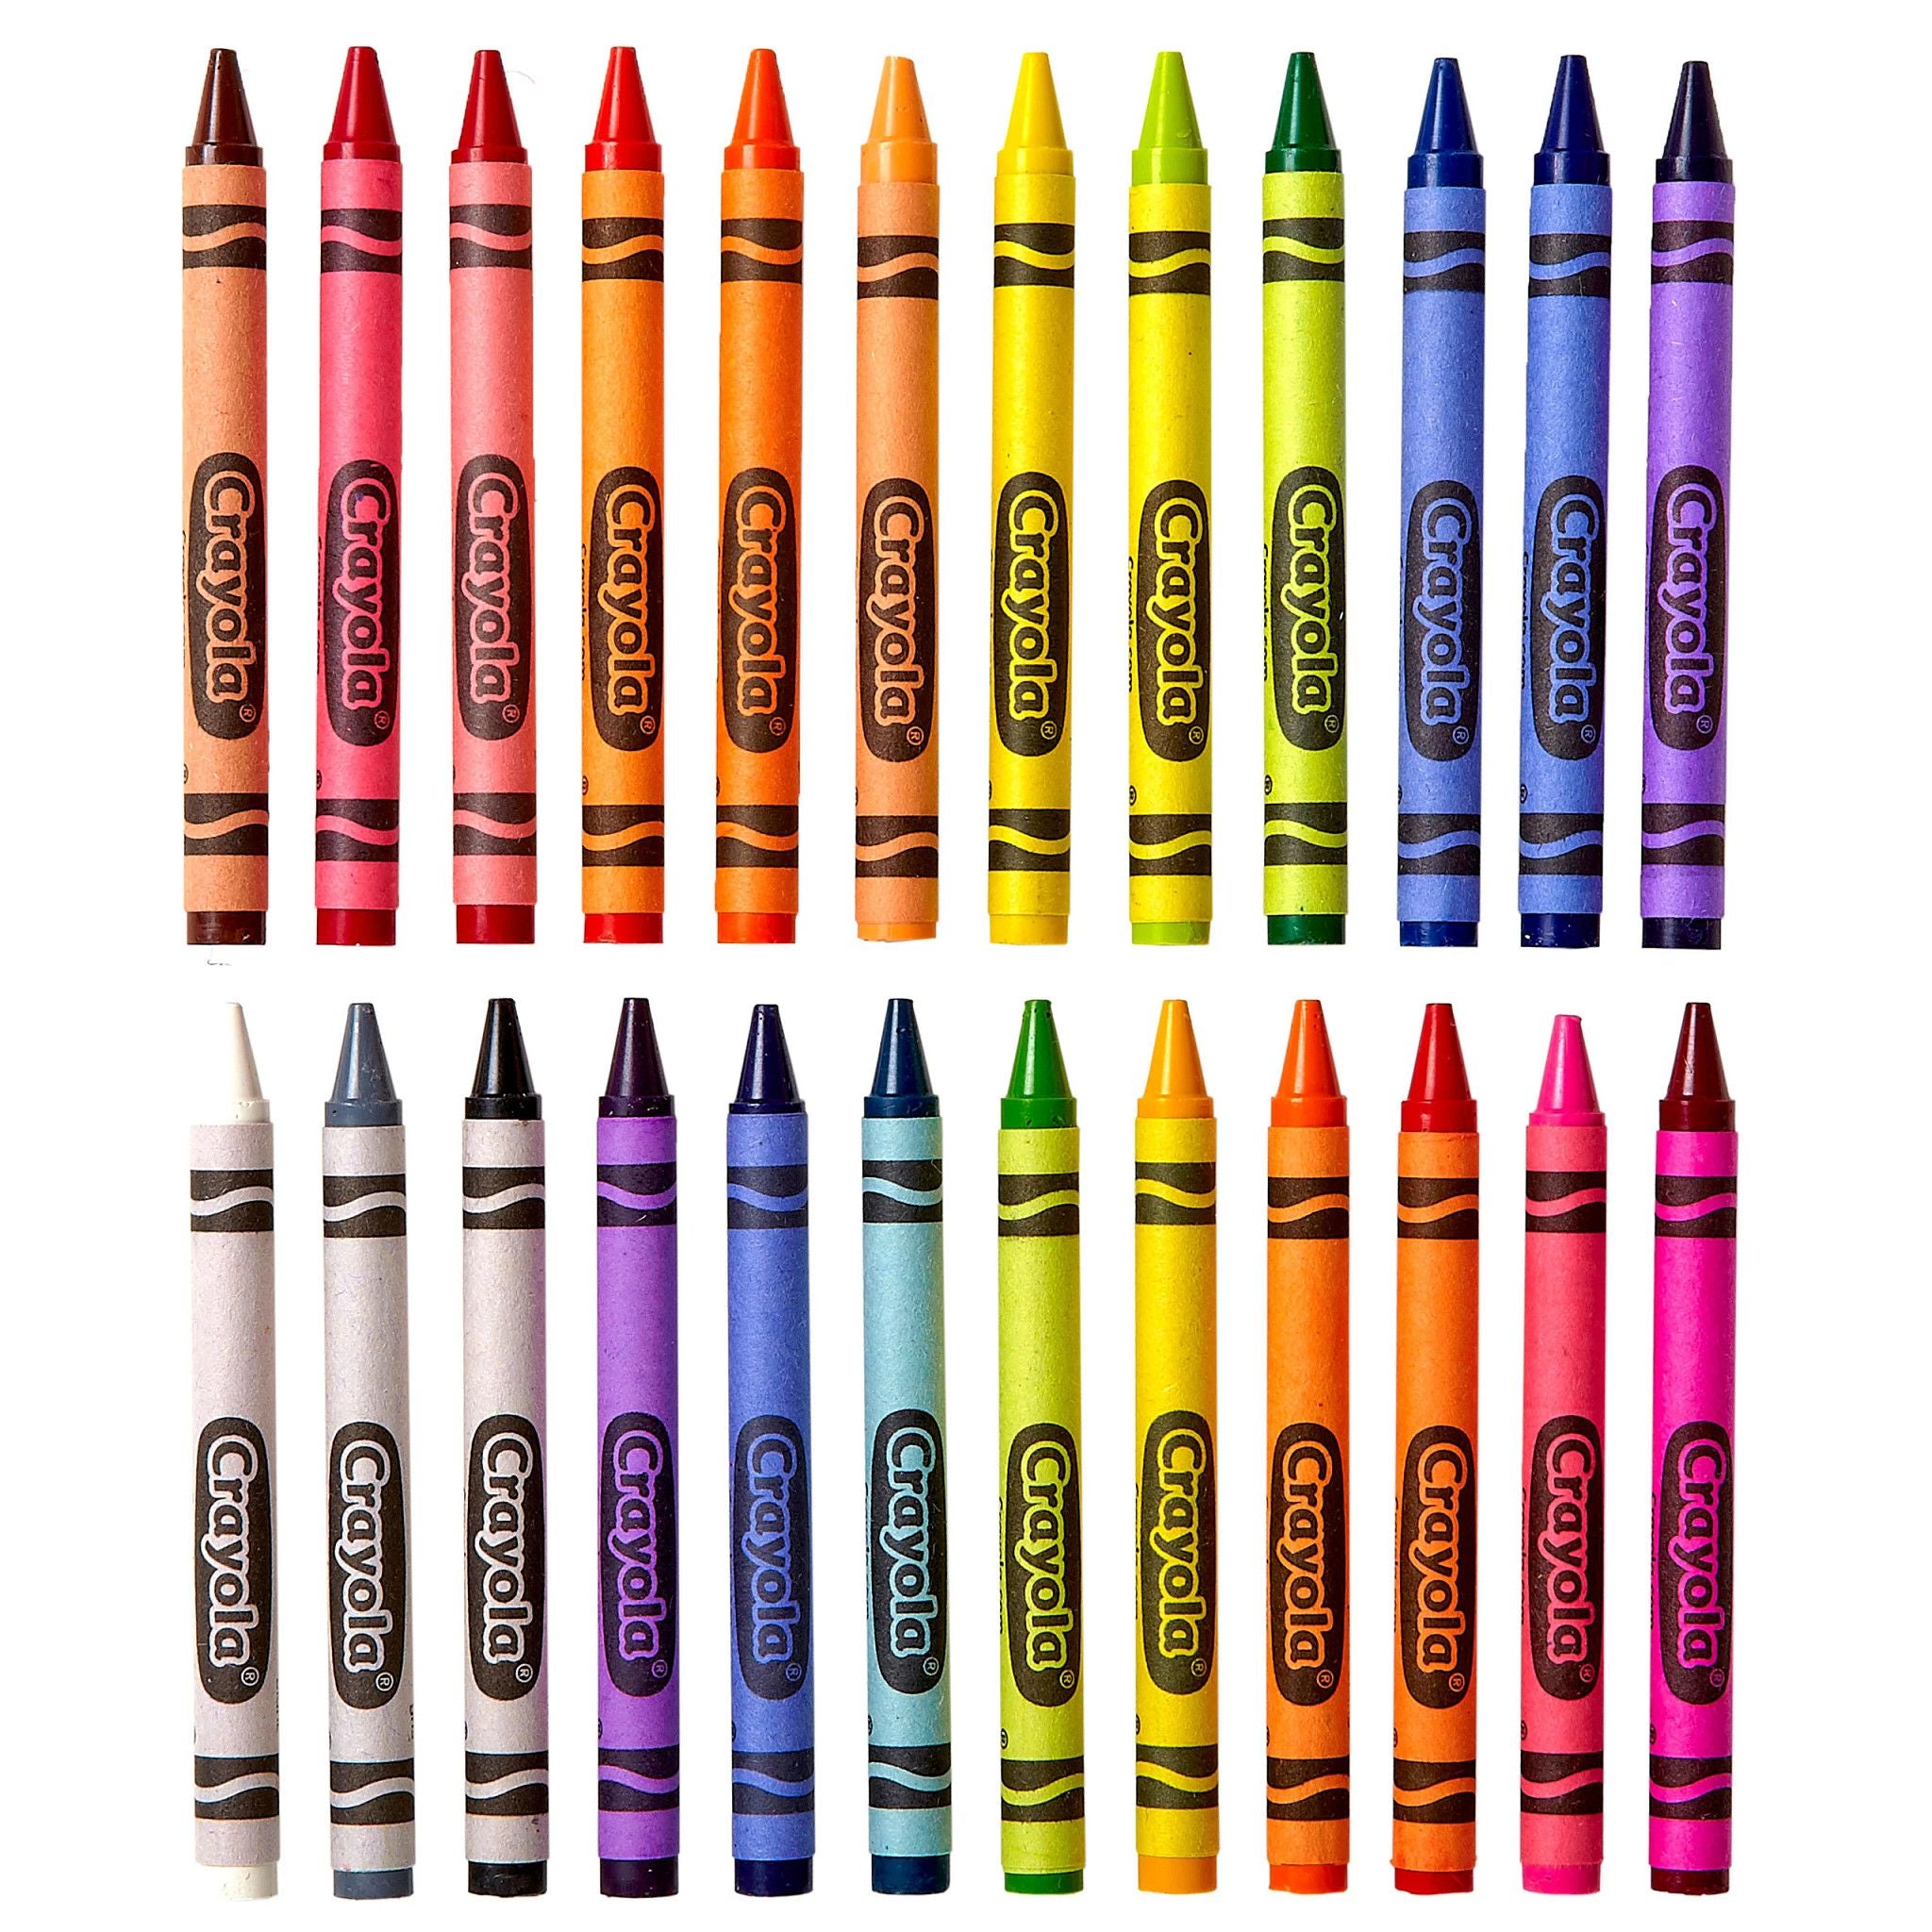 Crayola Multicultural Pencil Crayons-8pk - Inspiring Young Minds